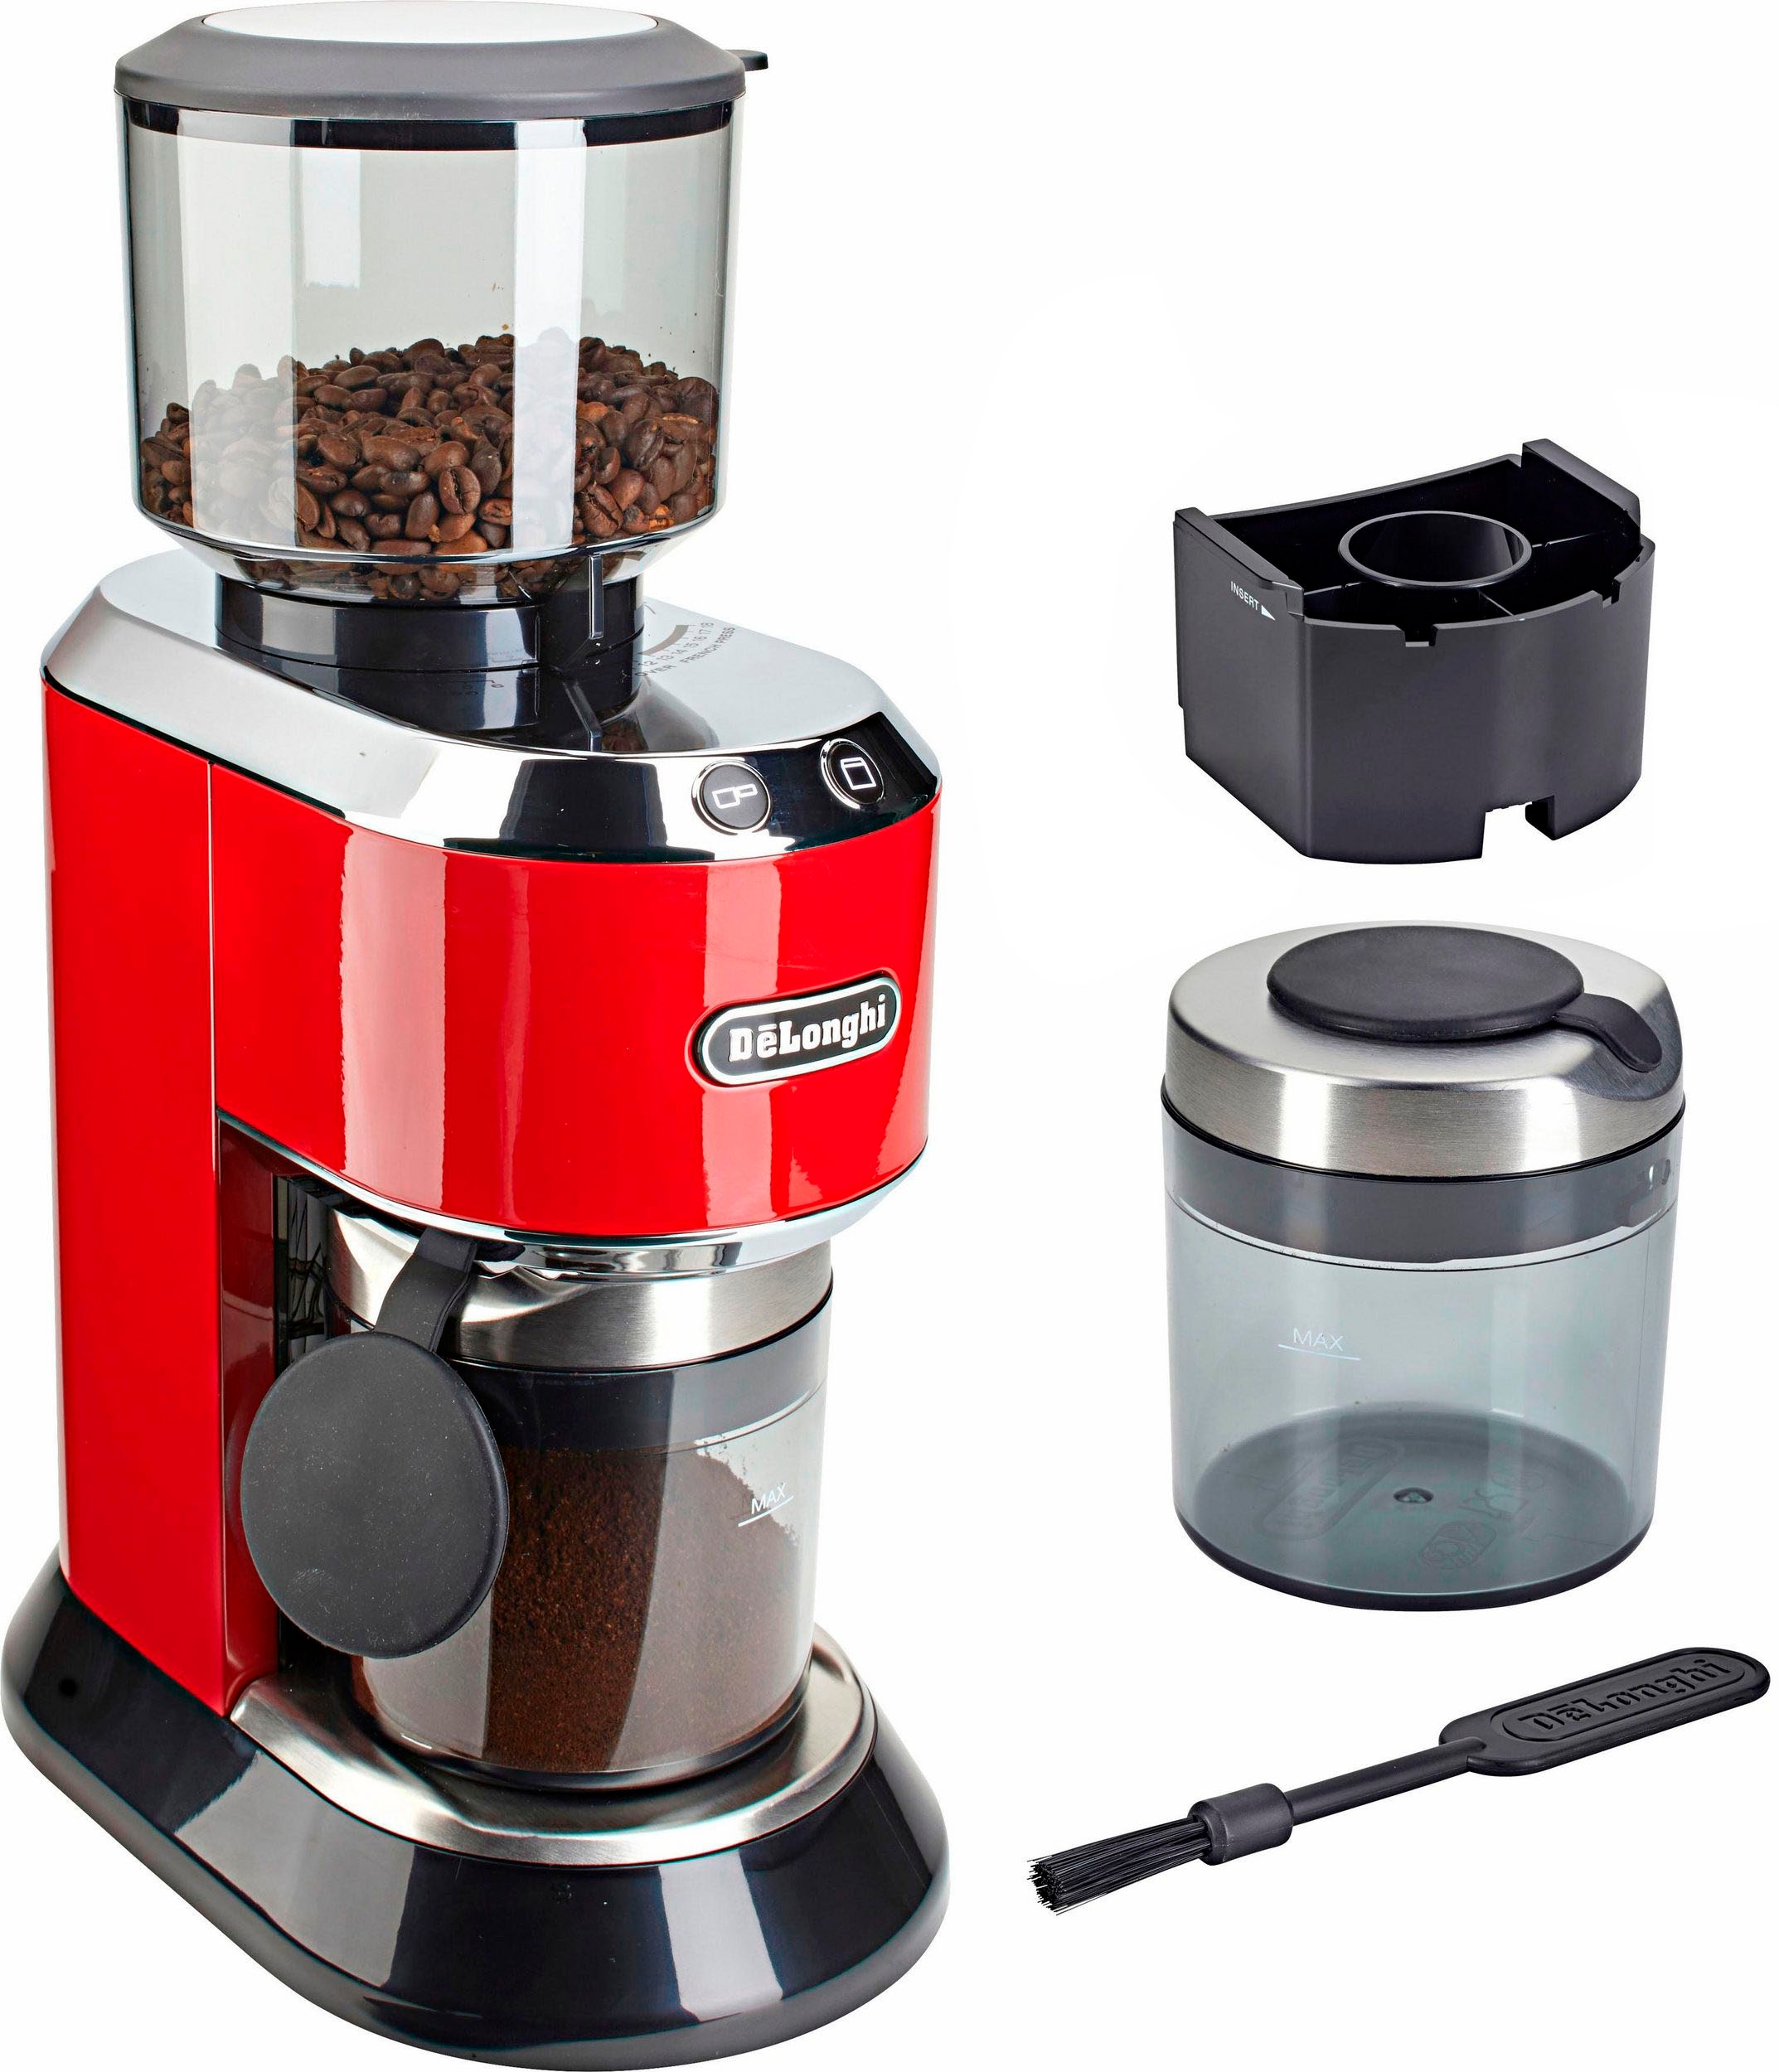 De'Longhi Kaffeemühle »Dedica KG520.R«, 150 W, Kegelmahlwerk, 350 g  Bohnenbehälter auf Rechnung bestellen